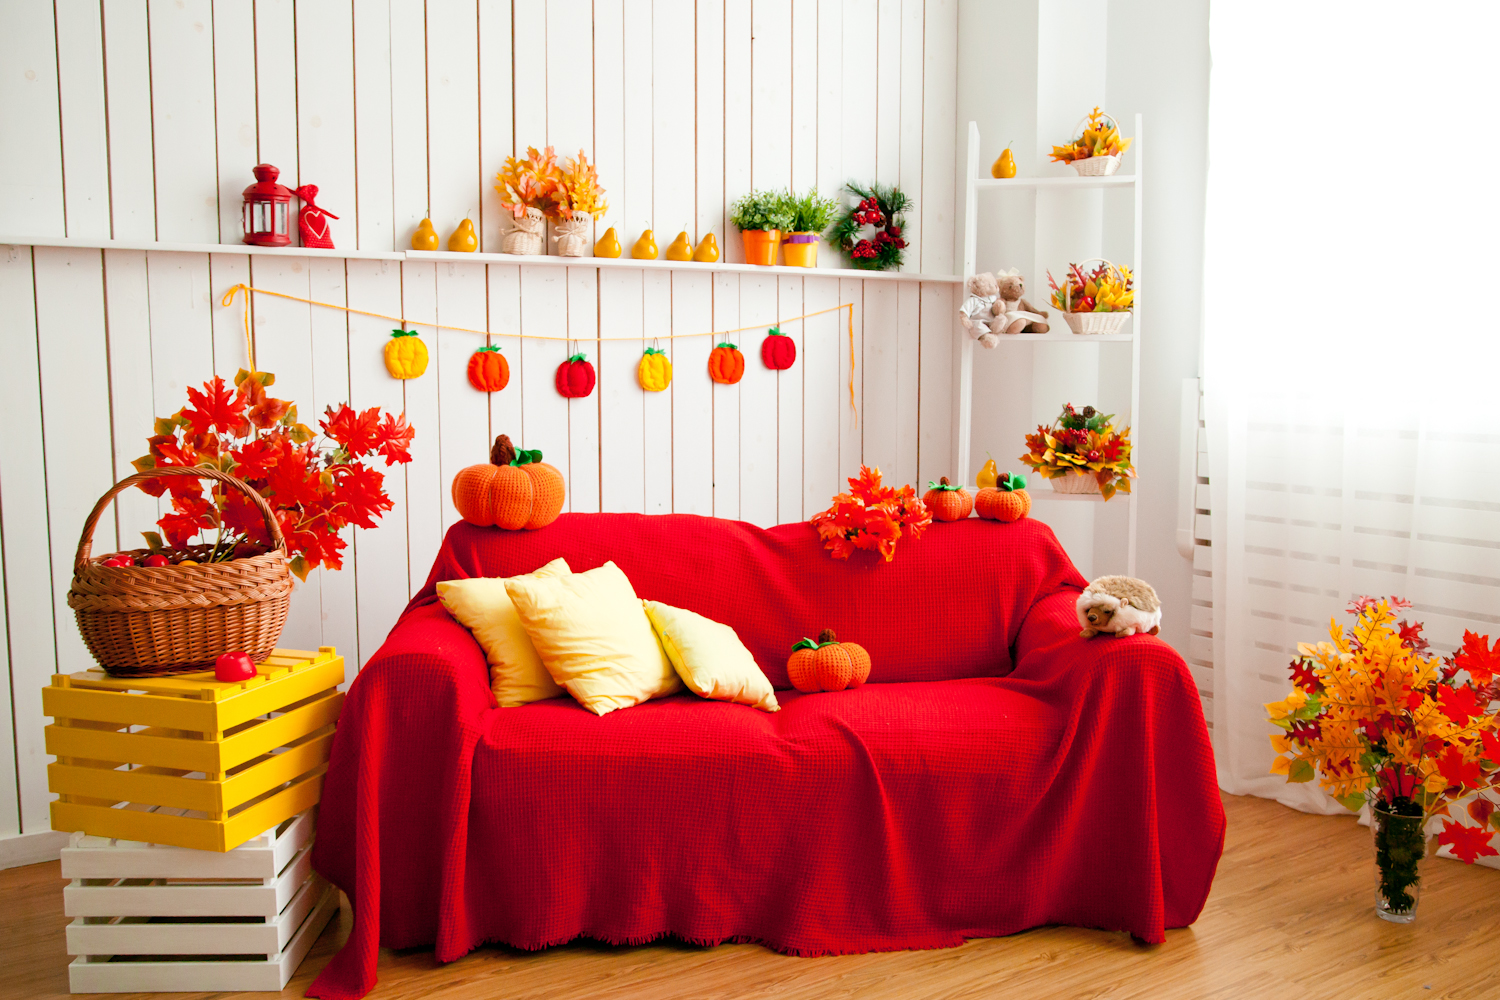 [Творим дома] Осенний декор для дома из природных материалов